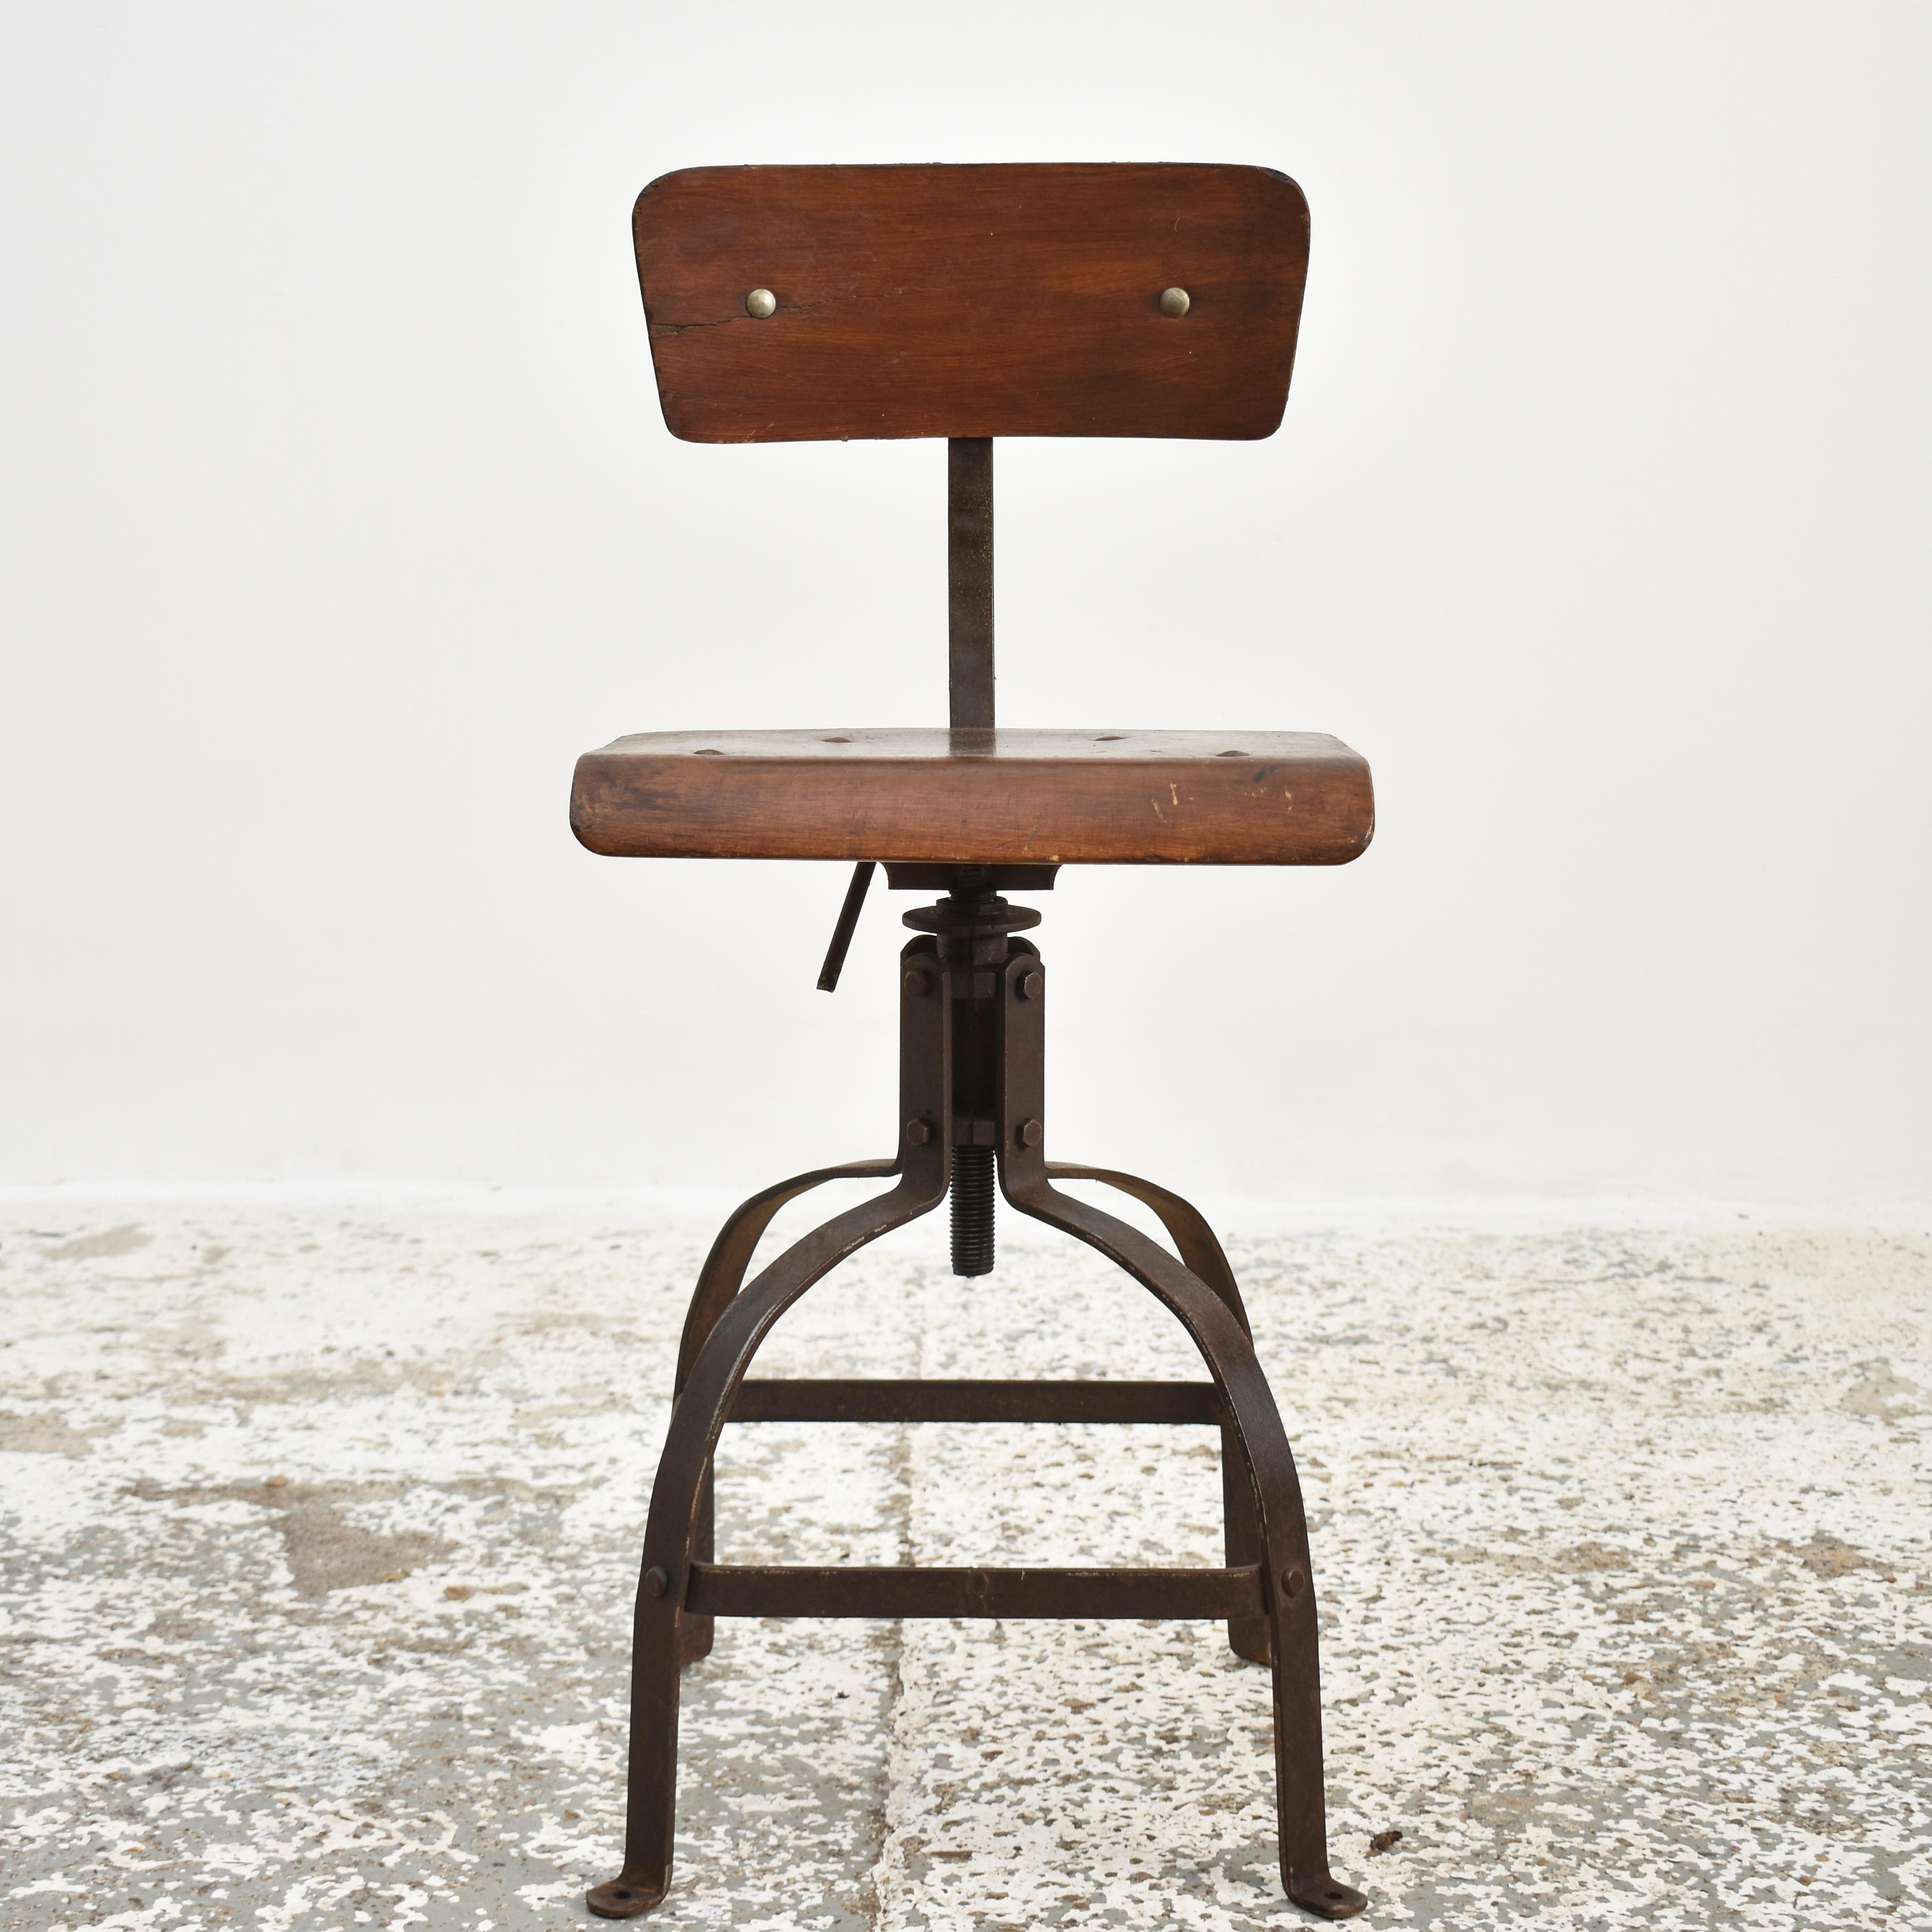 Original französischer Bienaise-Stuhl Modell 204 - D

Ein original Bienaise Industriestuhl. Ein klassisches französisches Industriedesign der 1940er Jahre, hergestellt von den Gebrüdern Nelson - Modell Nr. 204. Dieser Stuhl wäre in der Mitte des